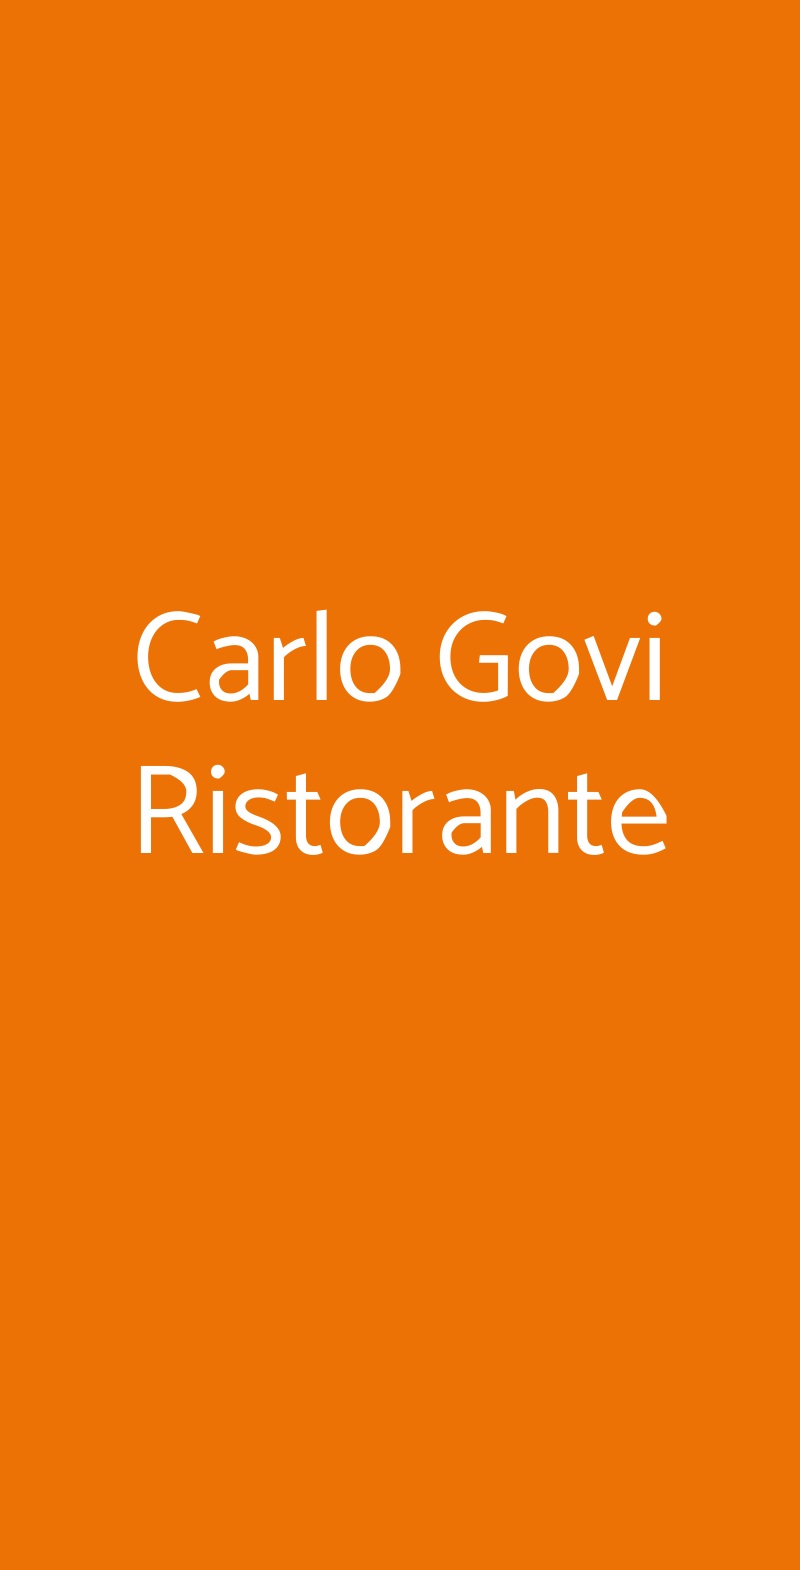 Carlo Govi Ristorante Mantova menù 1 pagina